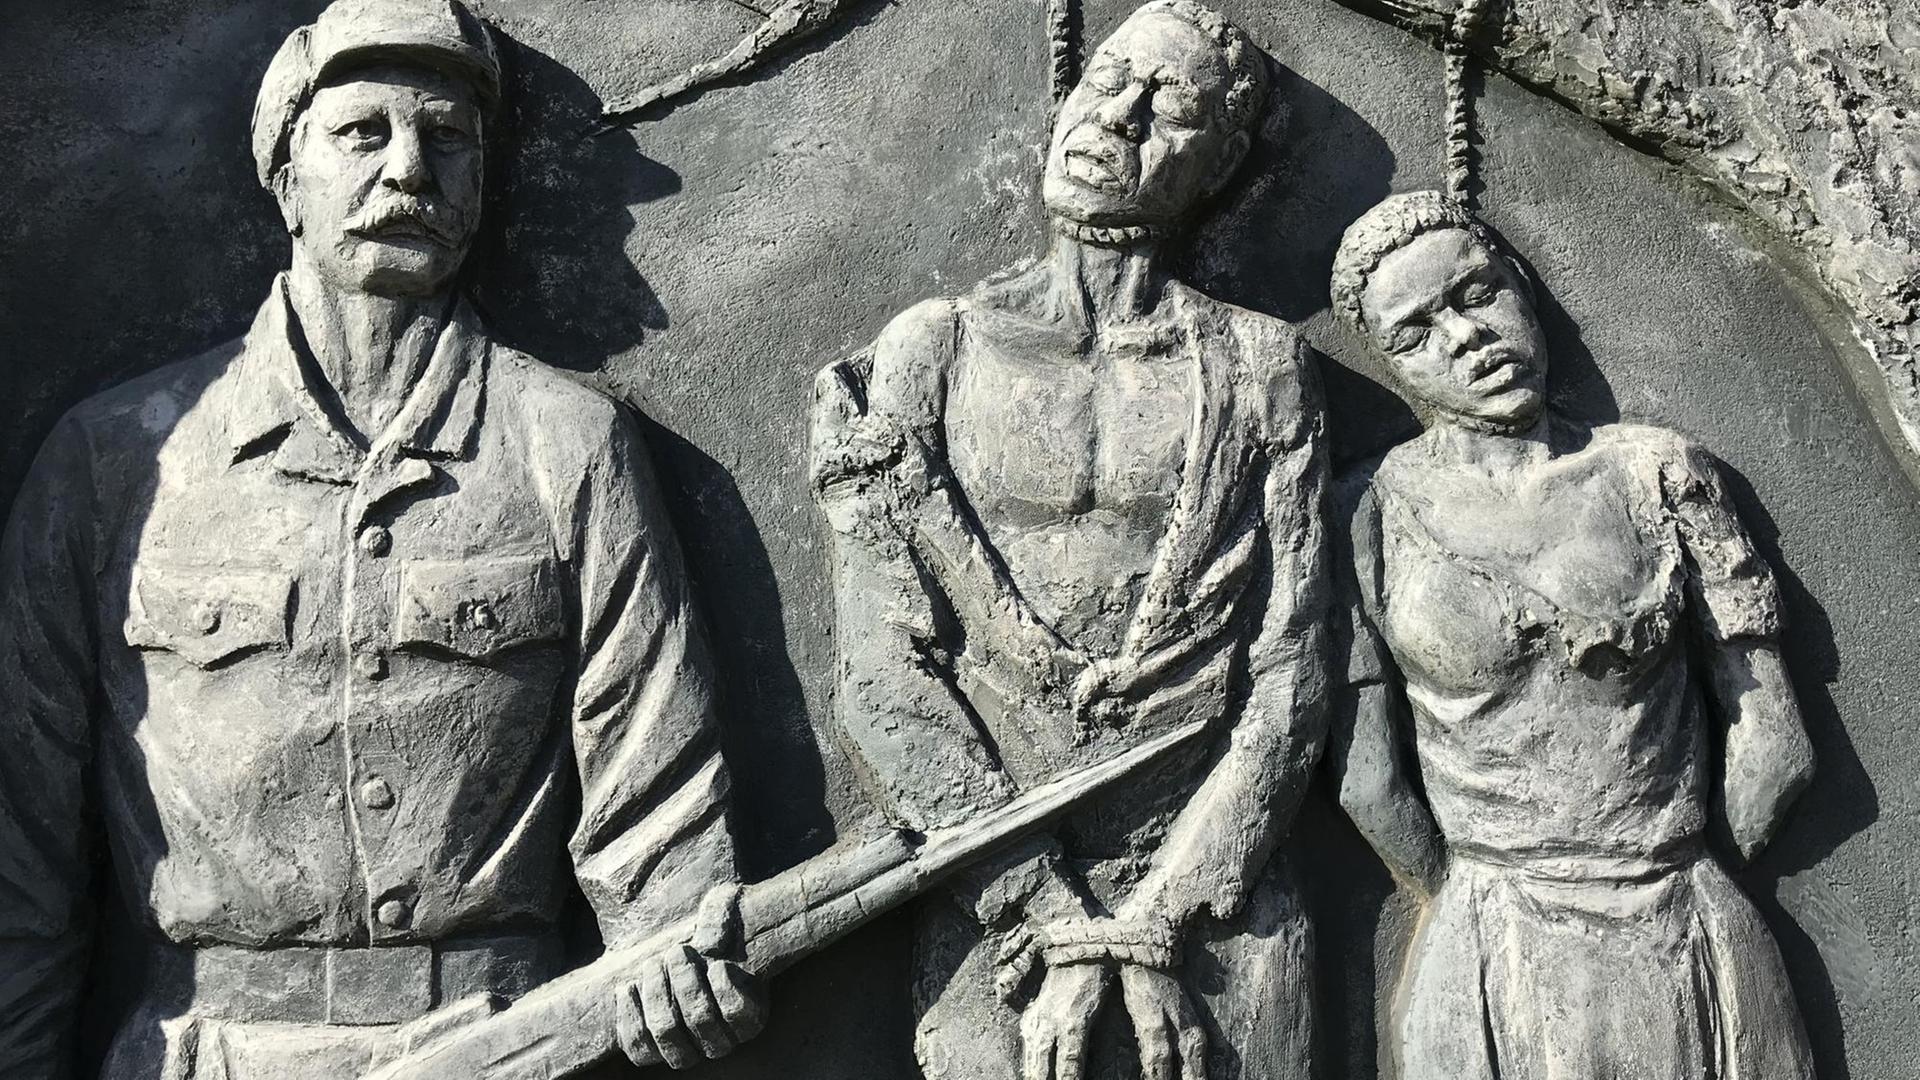 Ein Denkmal zur Erinnerung an den von deutschen Kolonialtruppen begangenen Völkermord an den Herero und Nama (etwas 1904-1907) im Zentrum der namibischen Hauptstadt Windhoek.